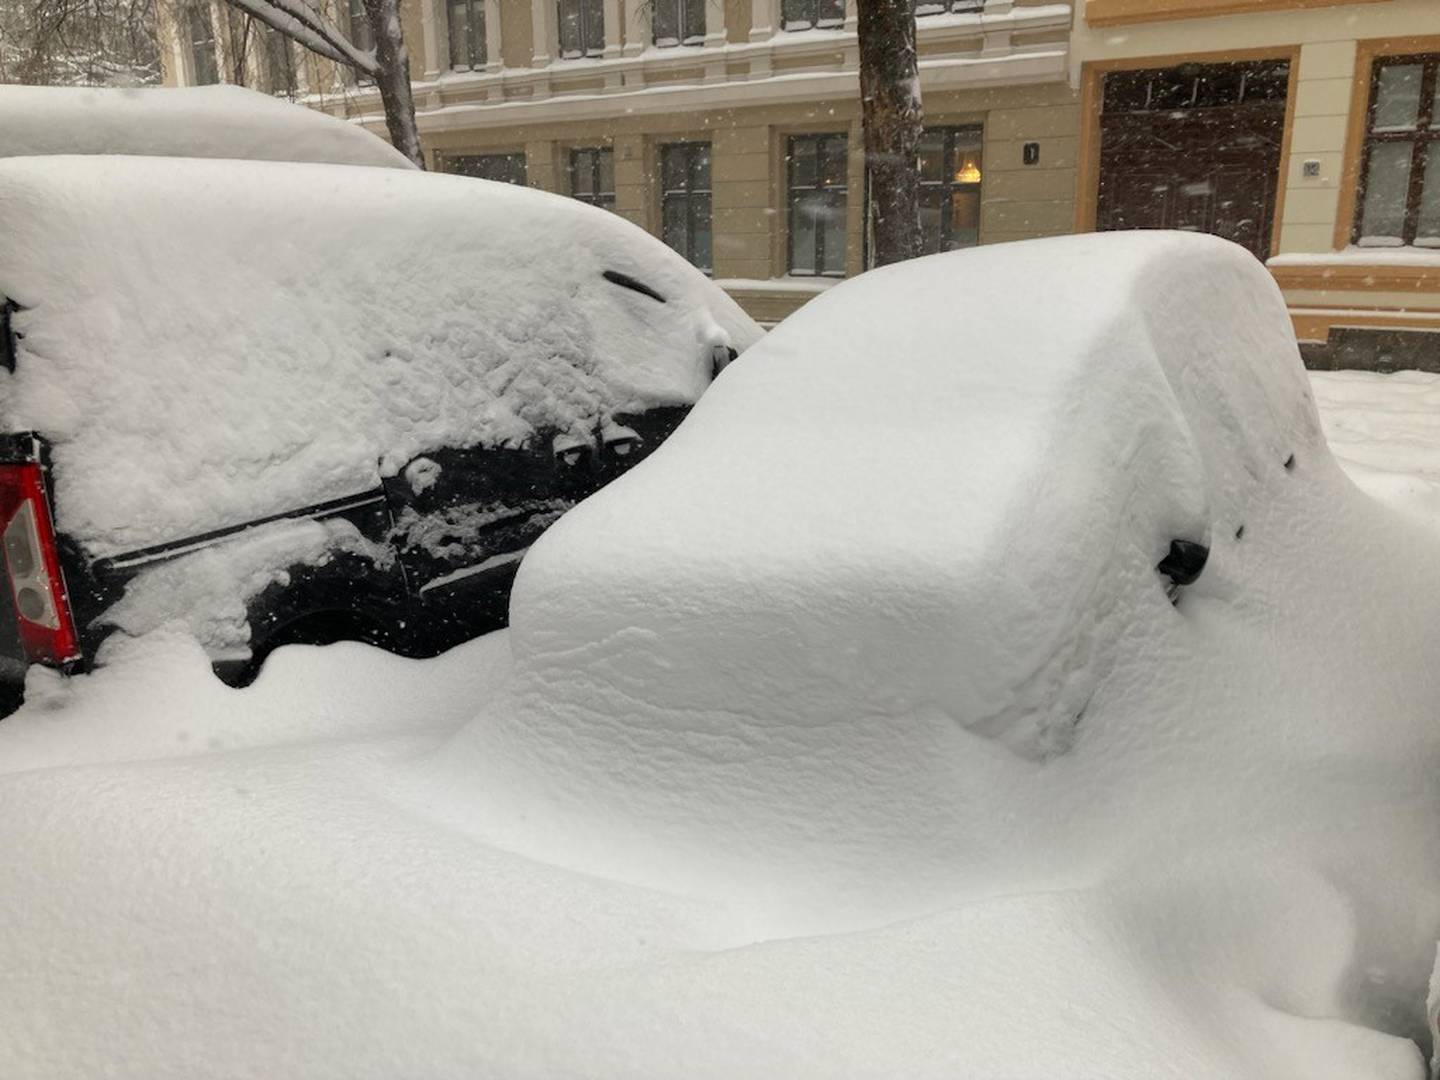 Enkelte har tatt oppfordringene om å la bilen stå på grunn av snøværet i hovedstaden, på alvor. Hvis da ikke eieren er i Spania for tida, som så mange andre nordmenn.